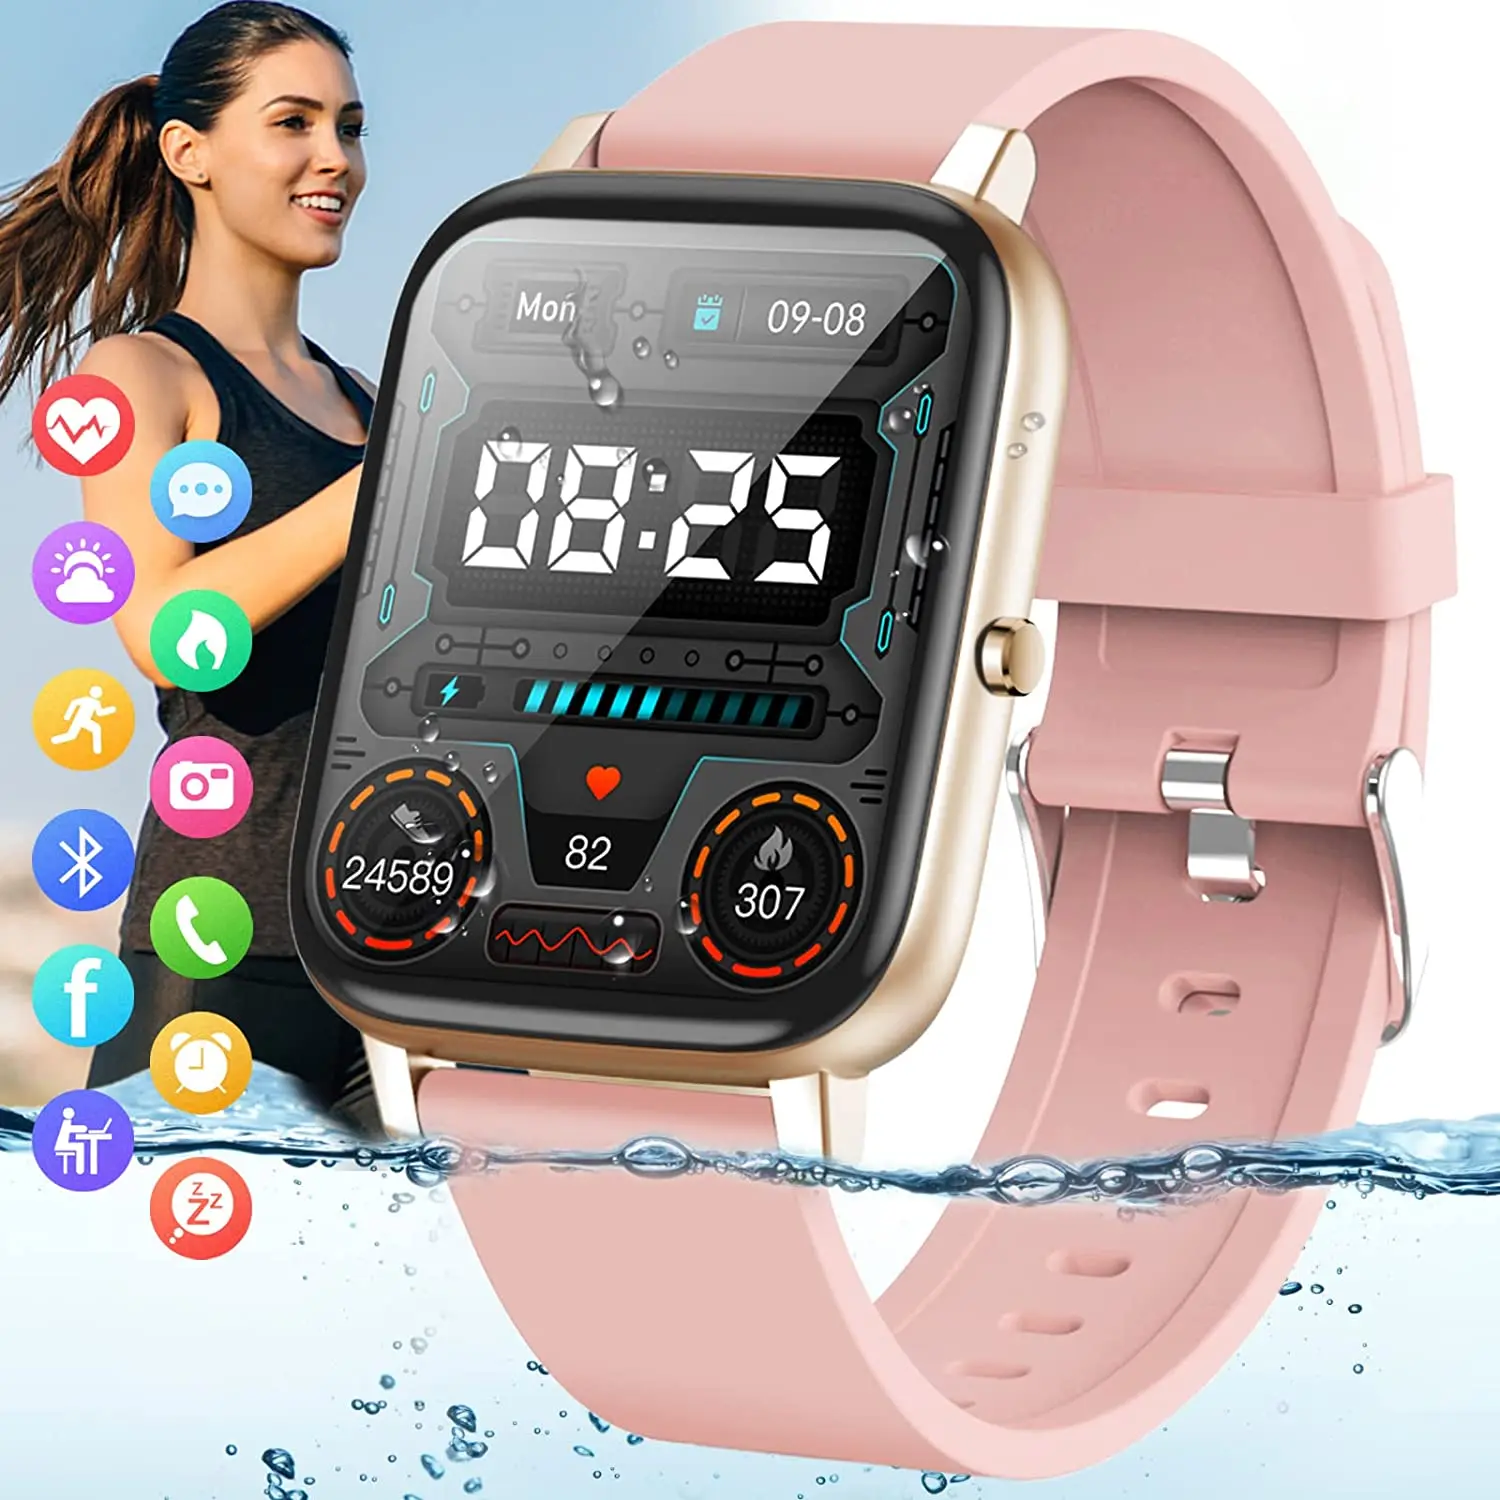 

Умные часы, фитнес-часы для женщин, трекер активности с монитором сердечного ритма и артериального давления, IP67 водонепроницаемые умные час...